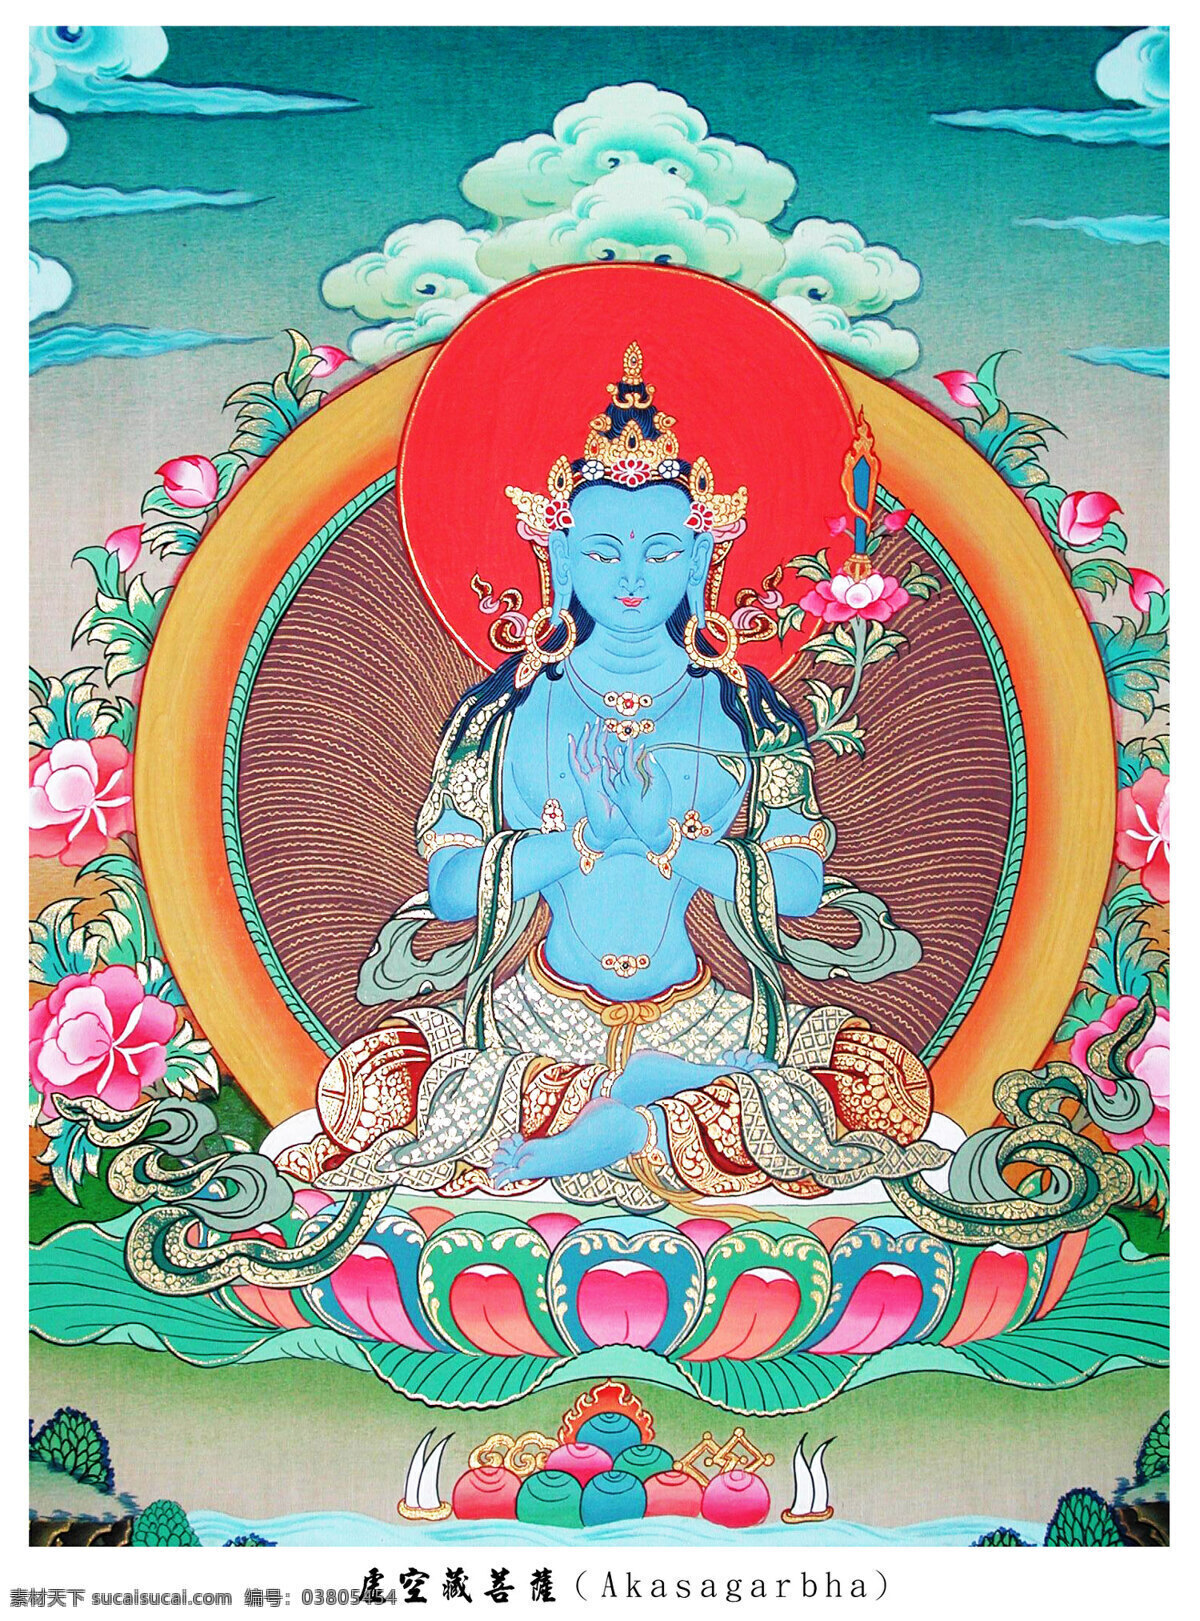 虚空藏菩萨 国宝图案 宗教绘画 唐卡图片系列 文化艺术 宗教信仰 设计图库